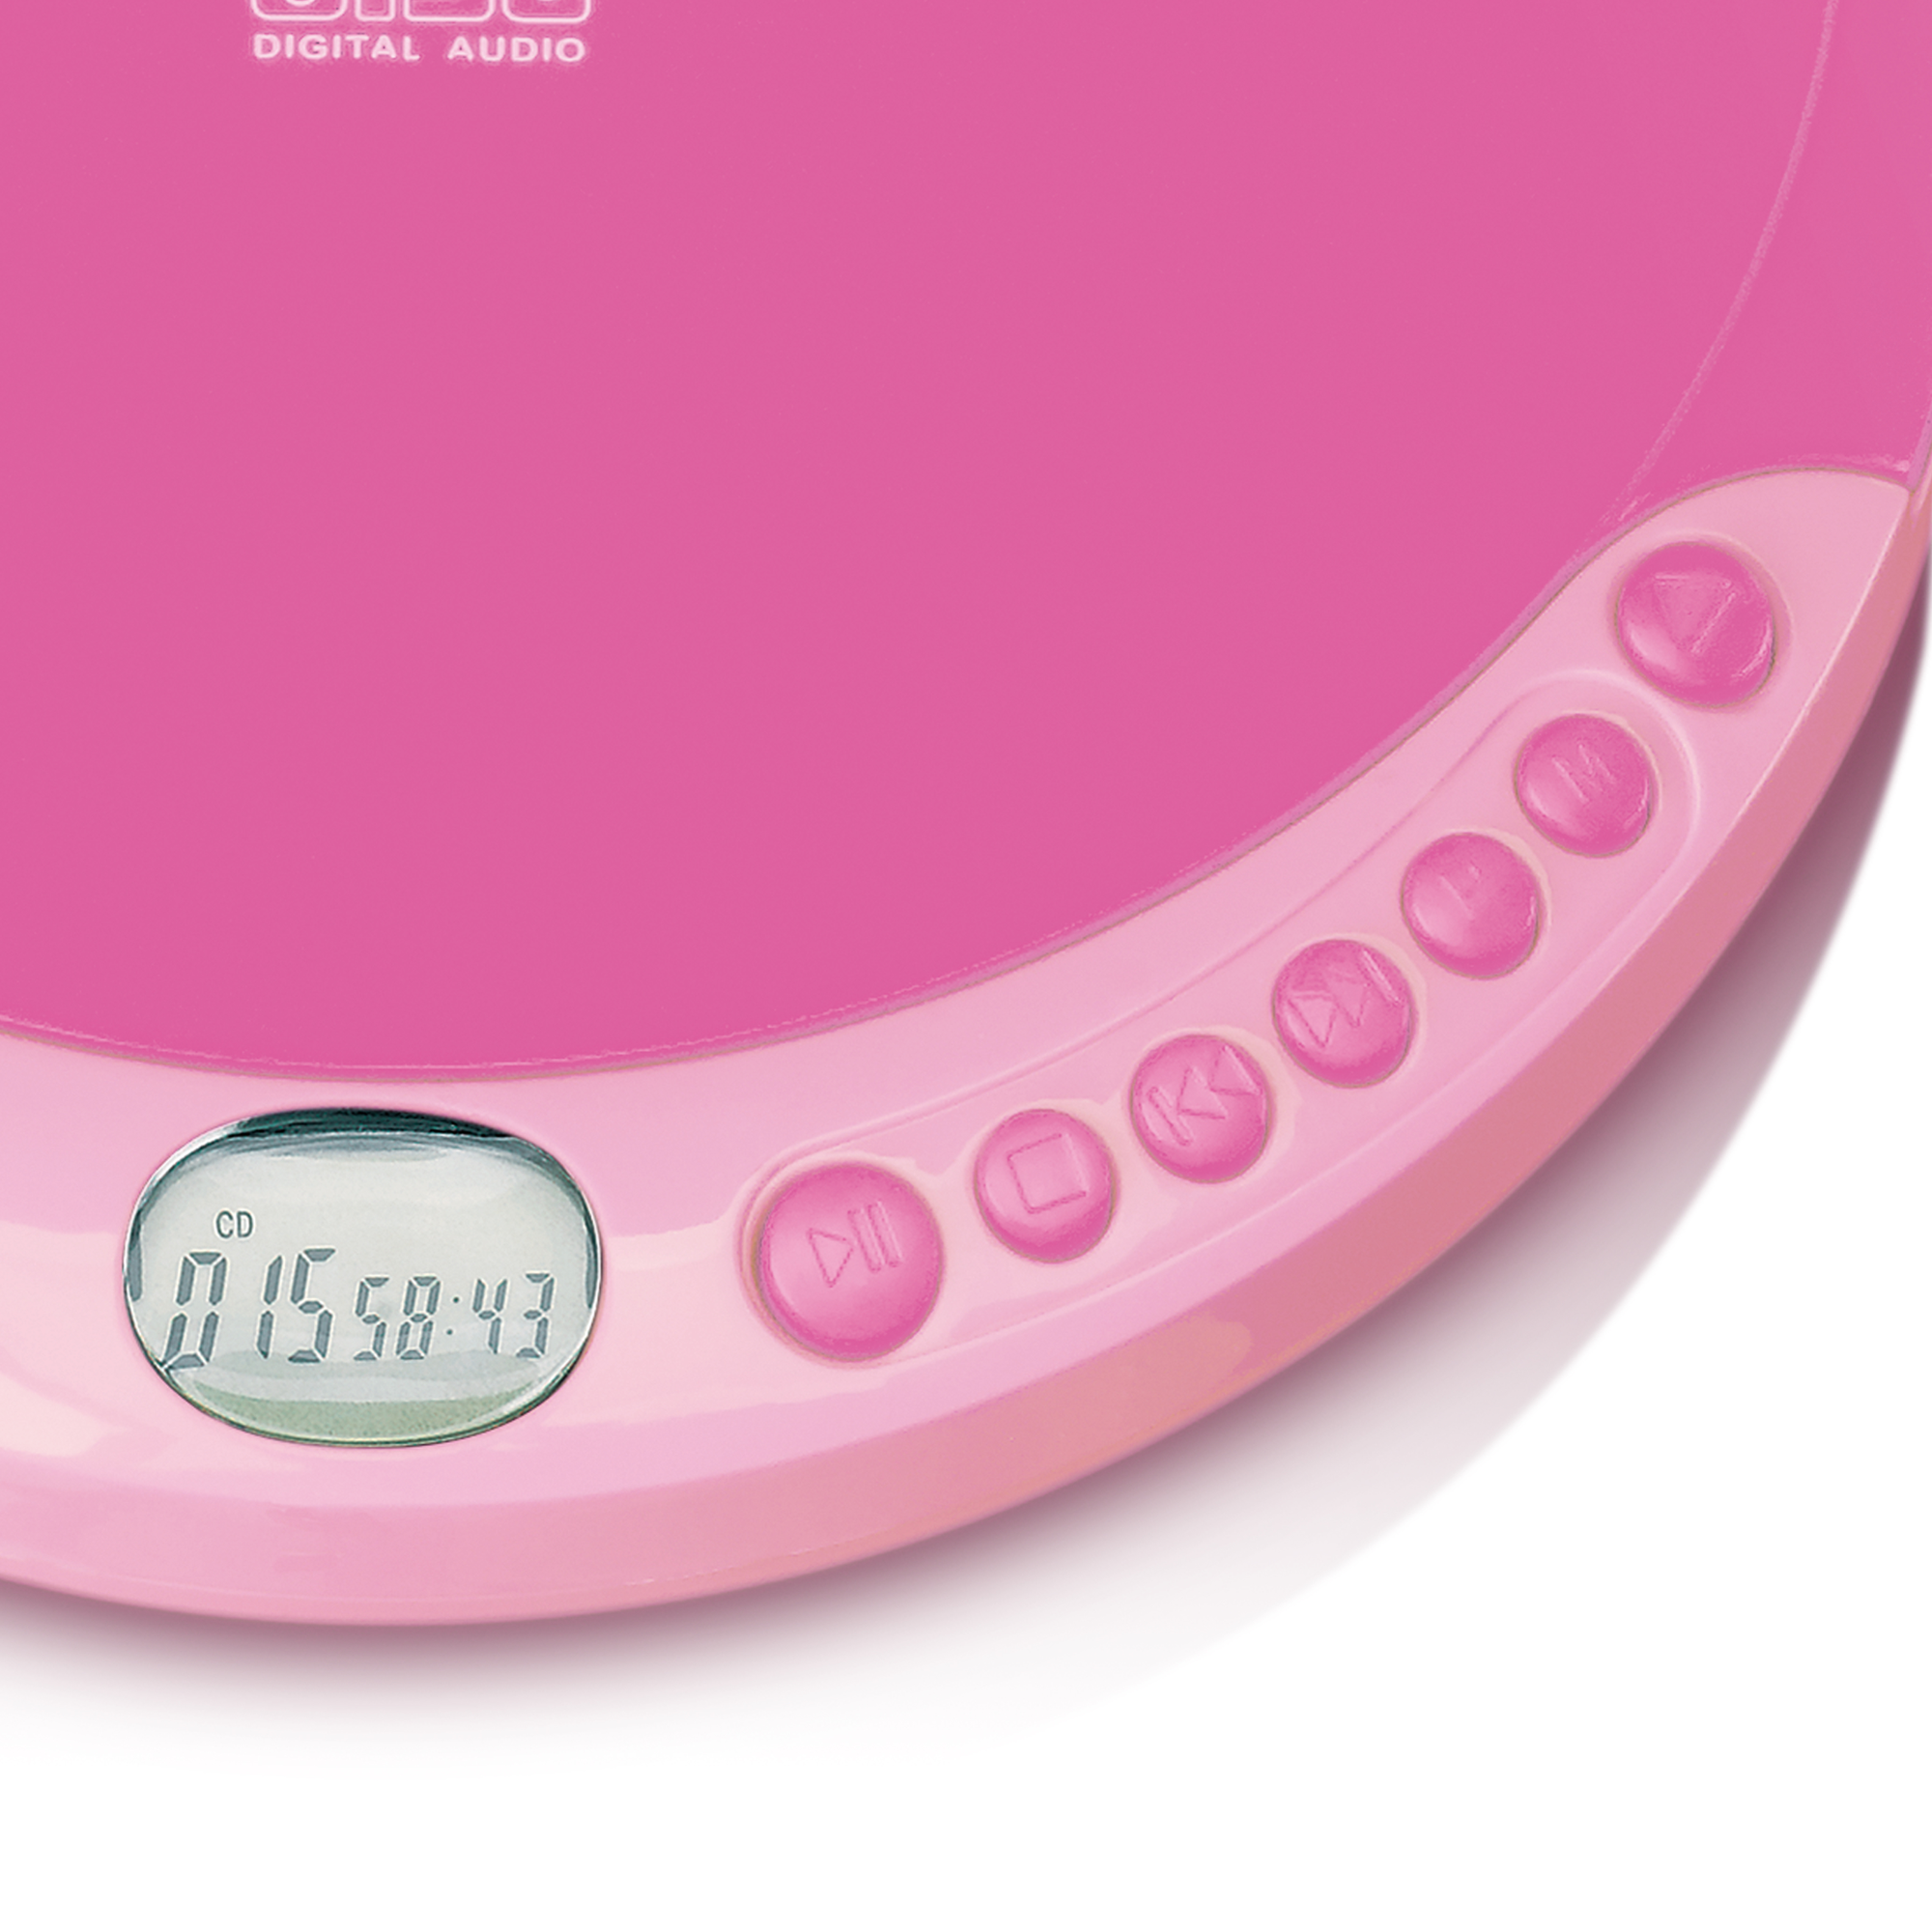 LENCO CD-011PK CD-Spieler Pink